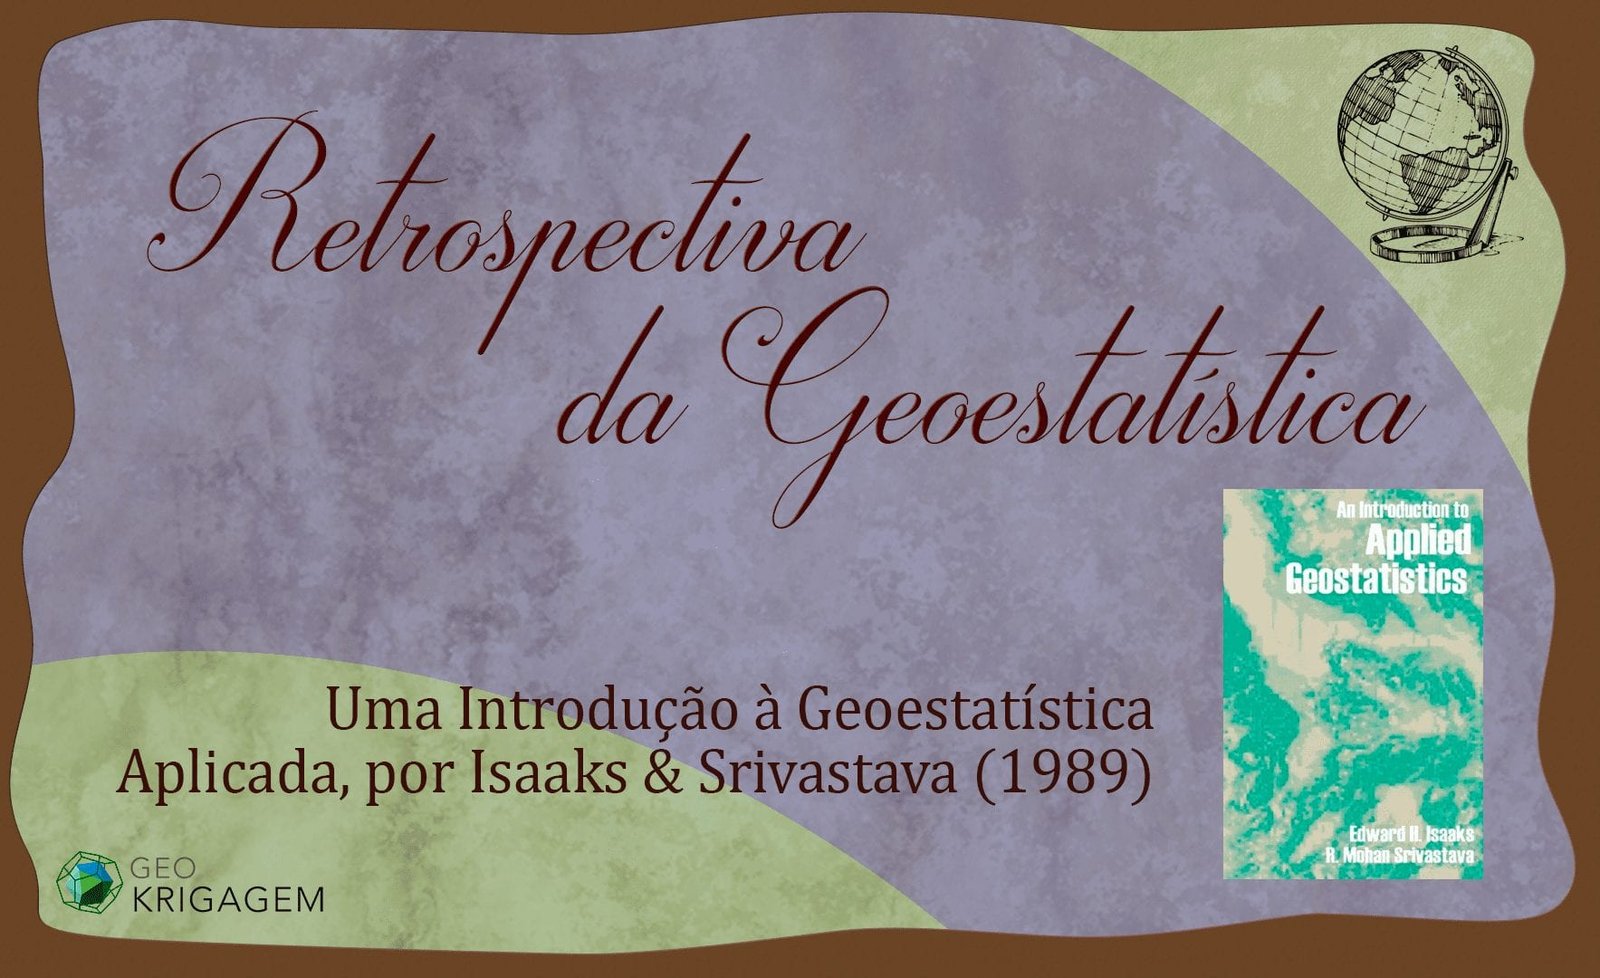 Retrospectiva da Geoestatística: Uma Introdução à Geoestatística Aplicada, por Isaaks & Srivastava (1989) - Banner Geokrigagem